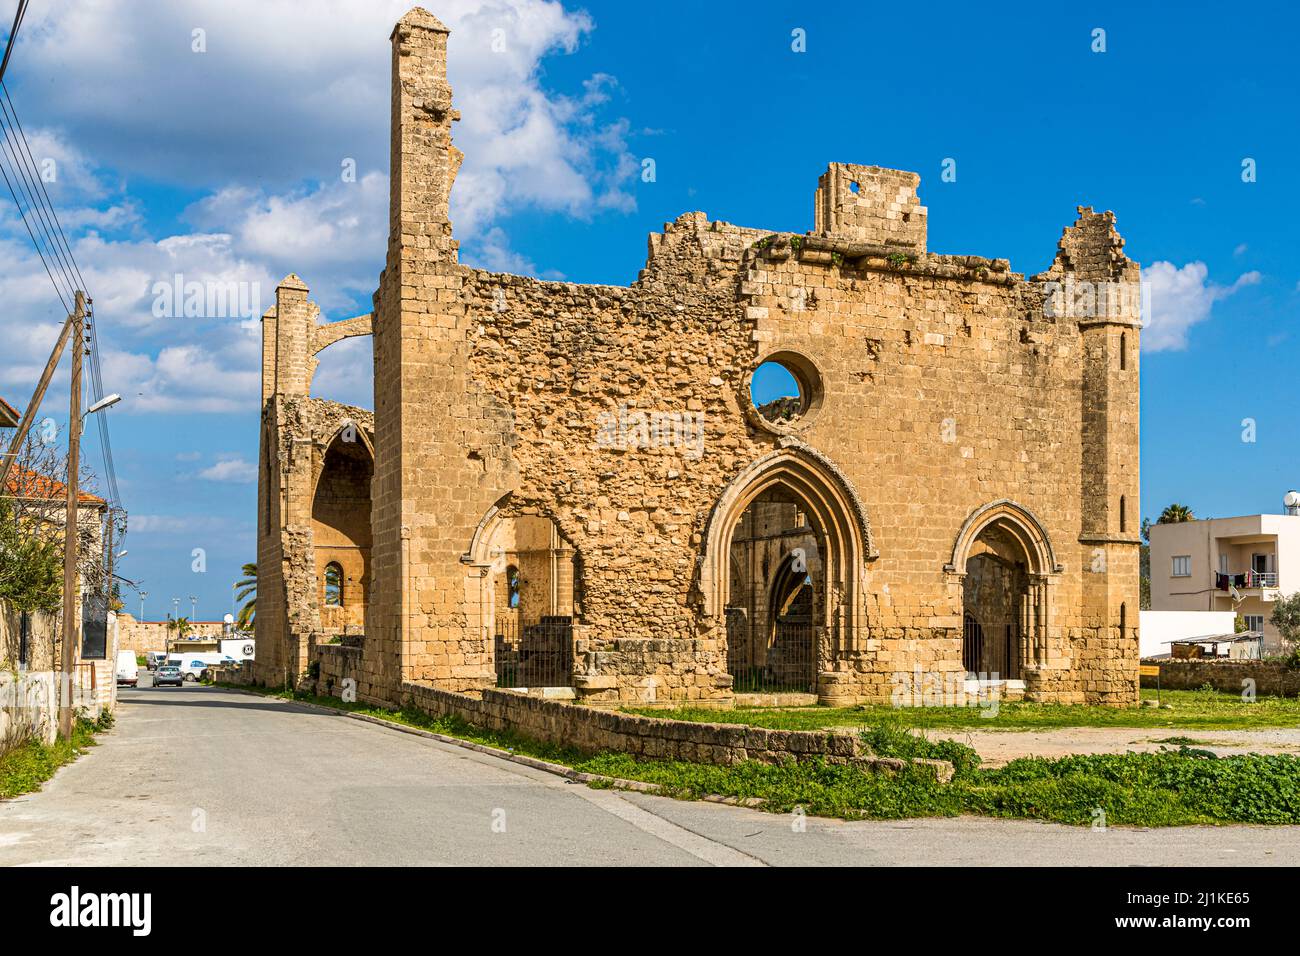 In Famagusta gab es angeblich 365 Kirchen, so dass man täglich bekennen konnte, ohne sich einmal im Jahr zu wiederholen. Gazimağusa, Türkische Republik Nordzypern (TRNC) Stockfoto